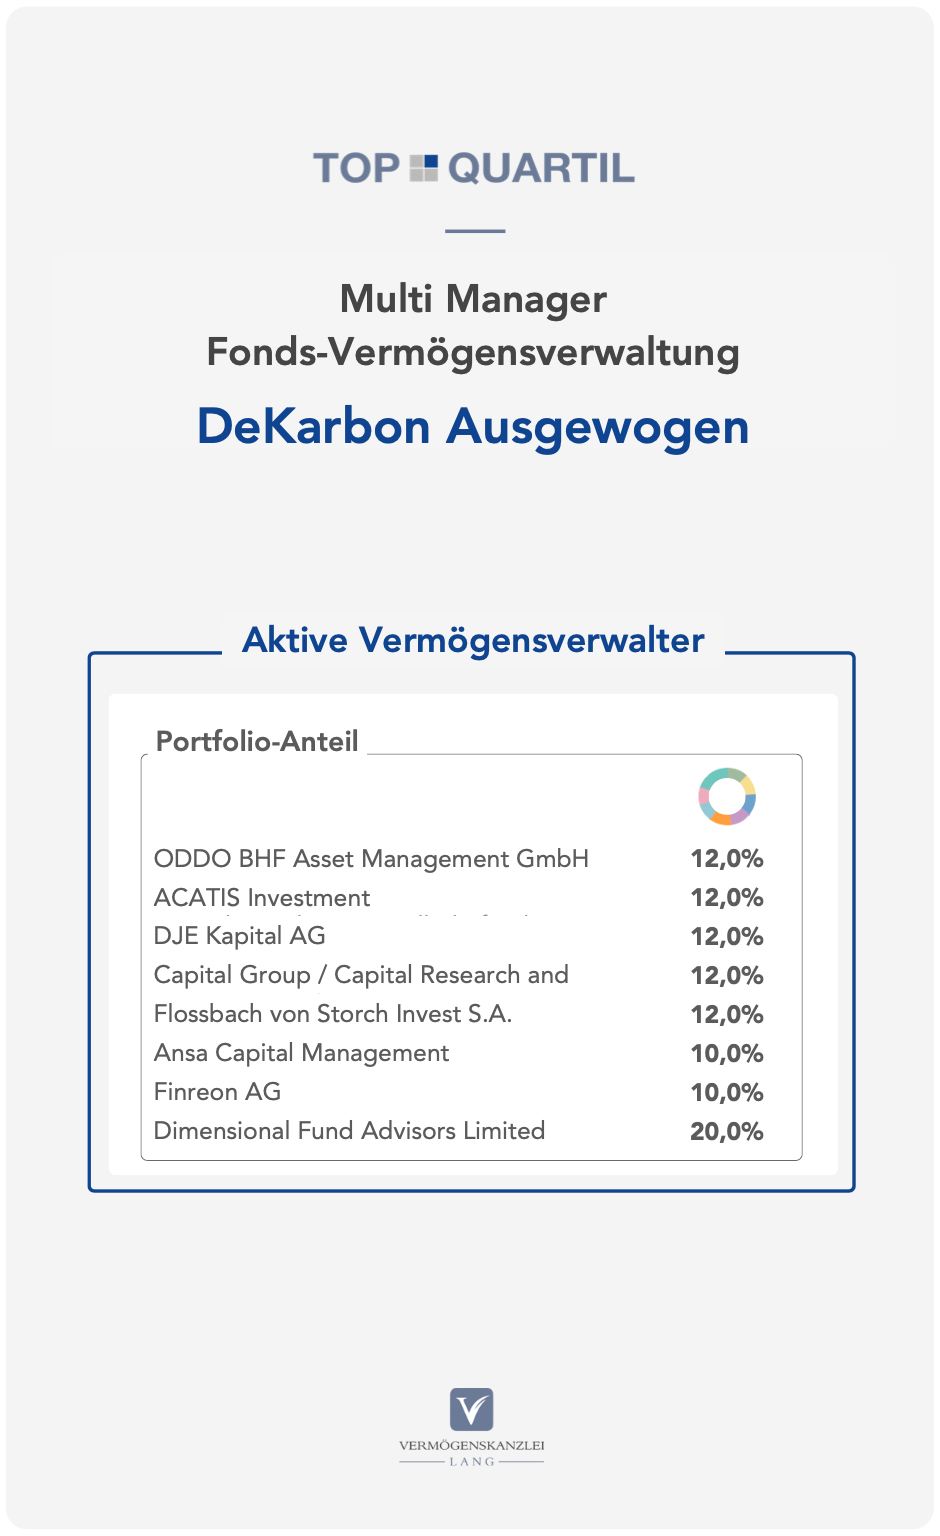 Fondsportfolio: TOP QUARTIL Multi Manager Fonds-Vermögensverwaltung mit niedrigem bis neutralem CO2 Fußabdruck [DeKarbon Ausgewogen]